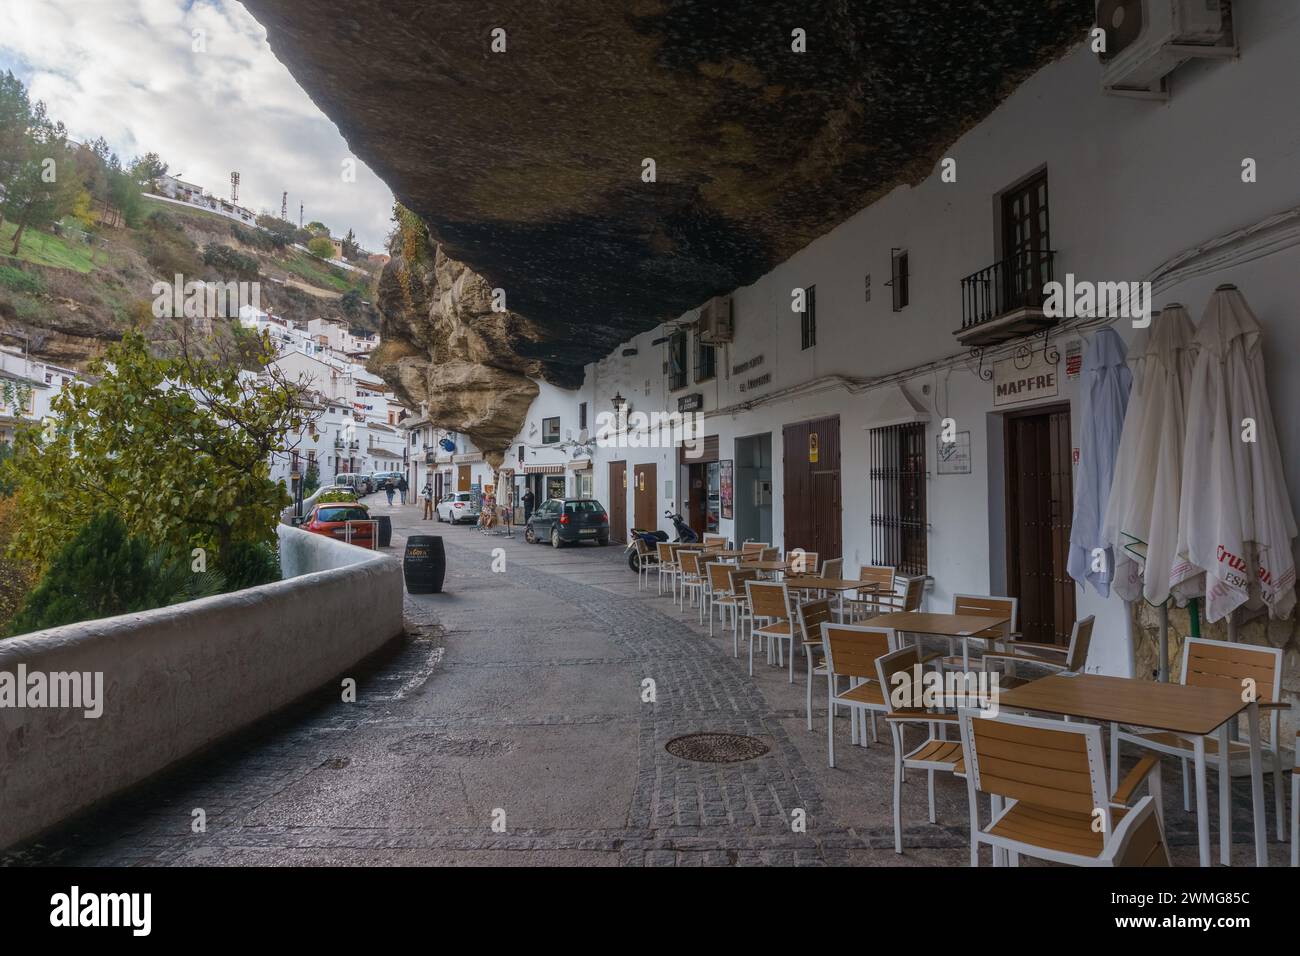 Tipico villaggio andaluso con case bianche e strade con abitazioni costruite su sbalzi di roccia, Setenil de las Bodegas, Andalusia, Spagna Foto Stock